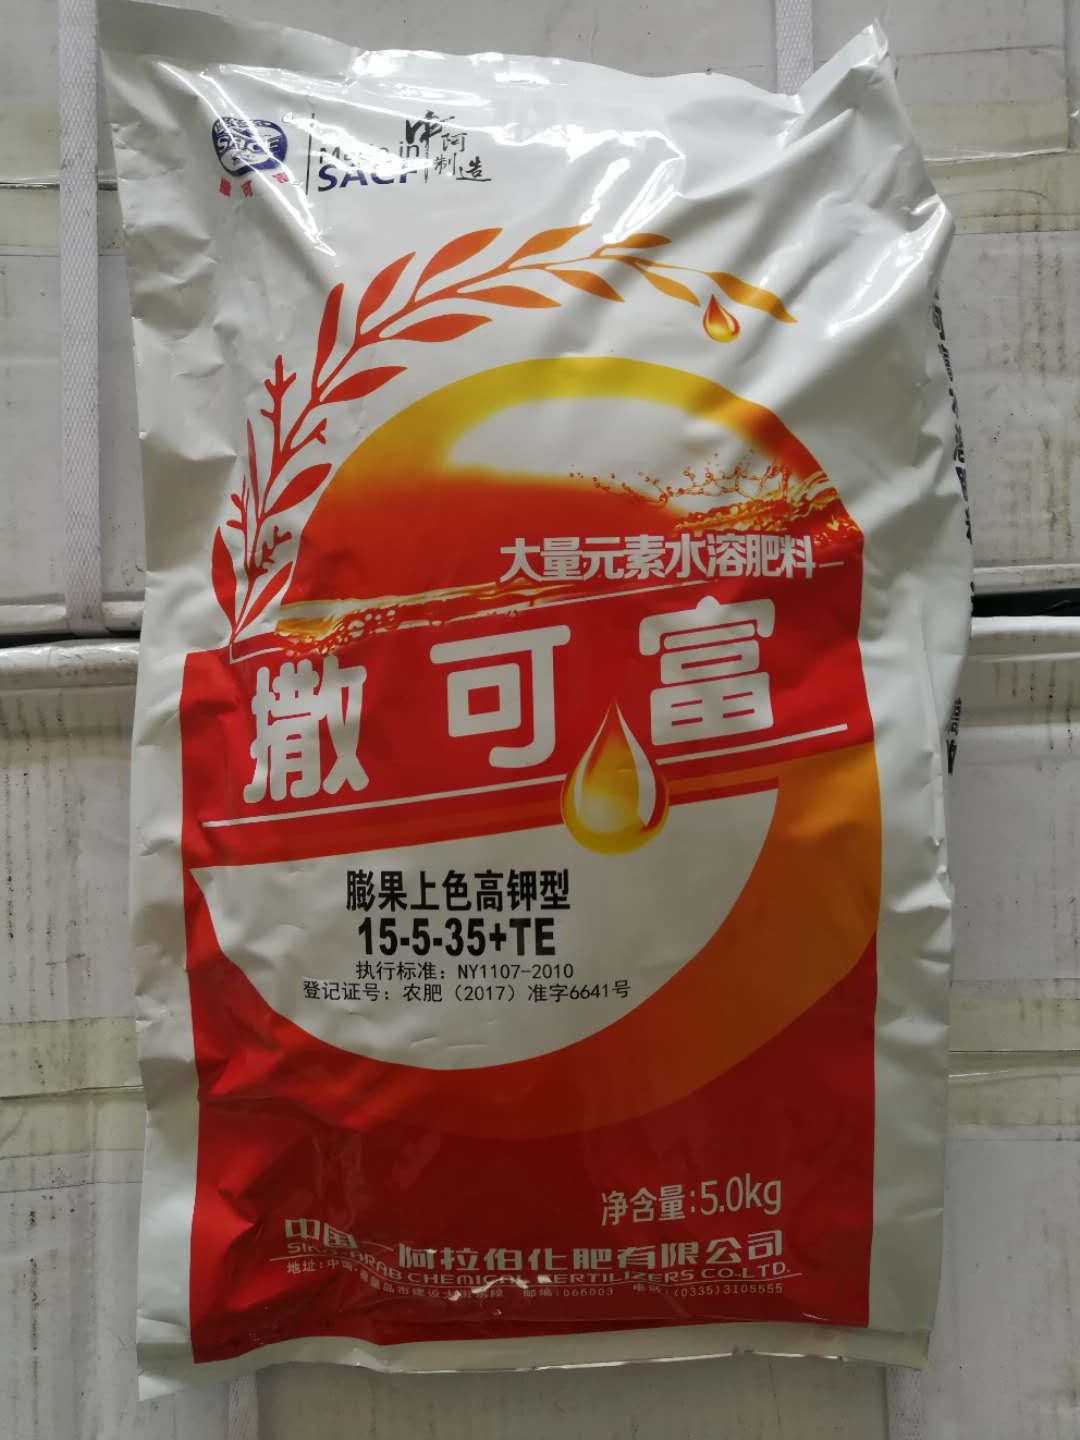 撒可富种草莓-中国-阿拉伯化肥有限公司